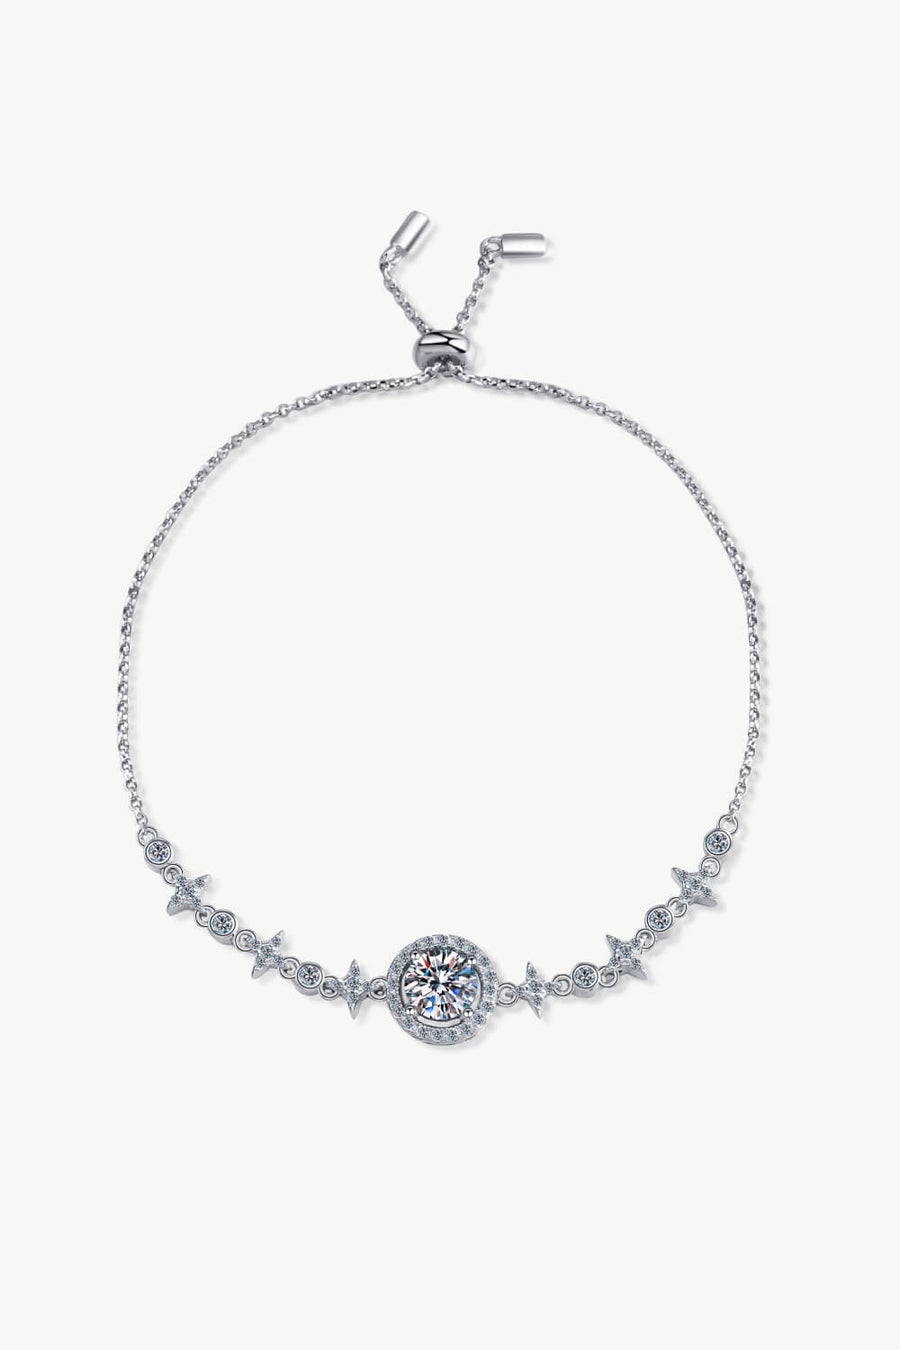 Best Diamond Bracket Jewelry Gifts for Women | 1 Carat Diamond Bracelet - Show You The Way | MASON New York